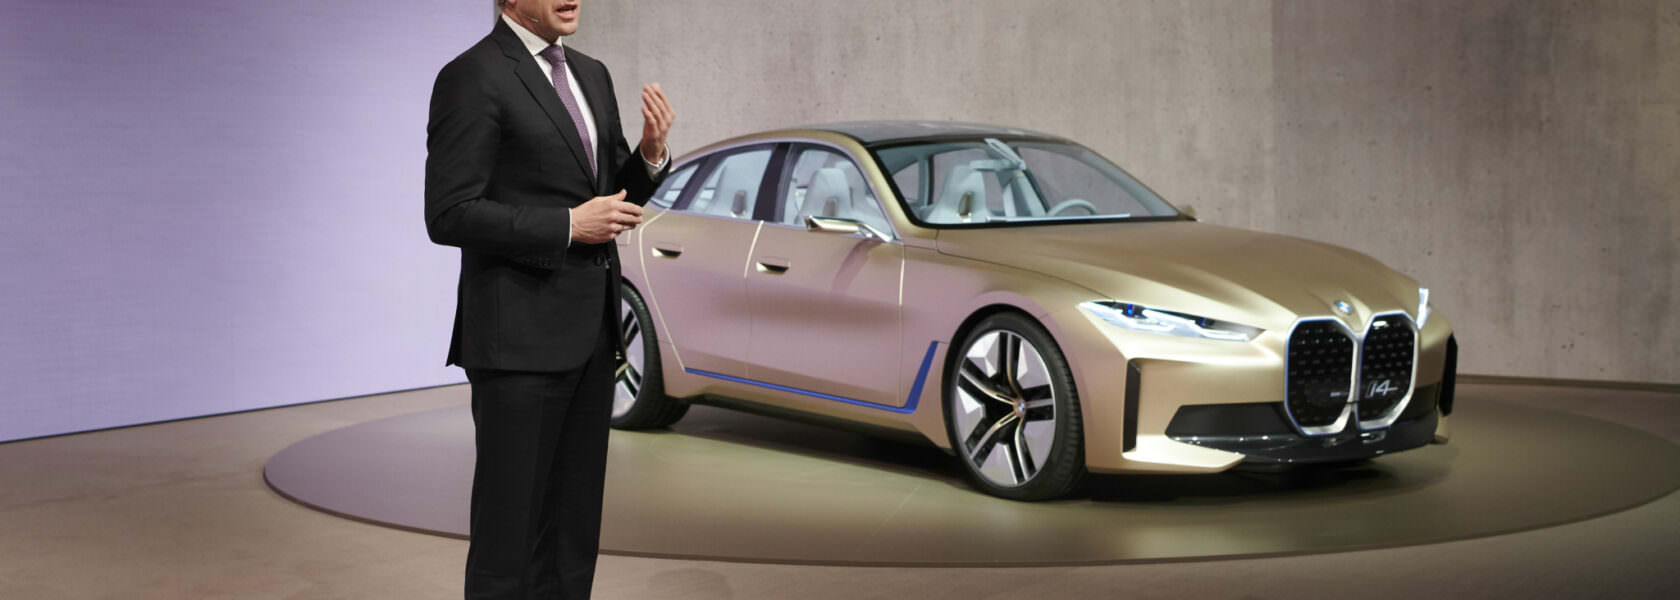 BMW investissement nouvelles technologies